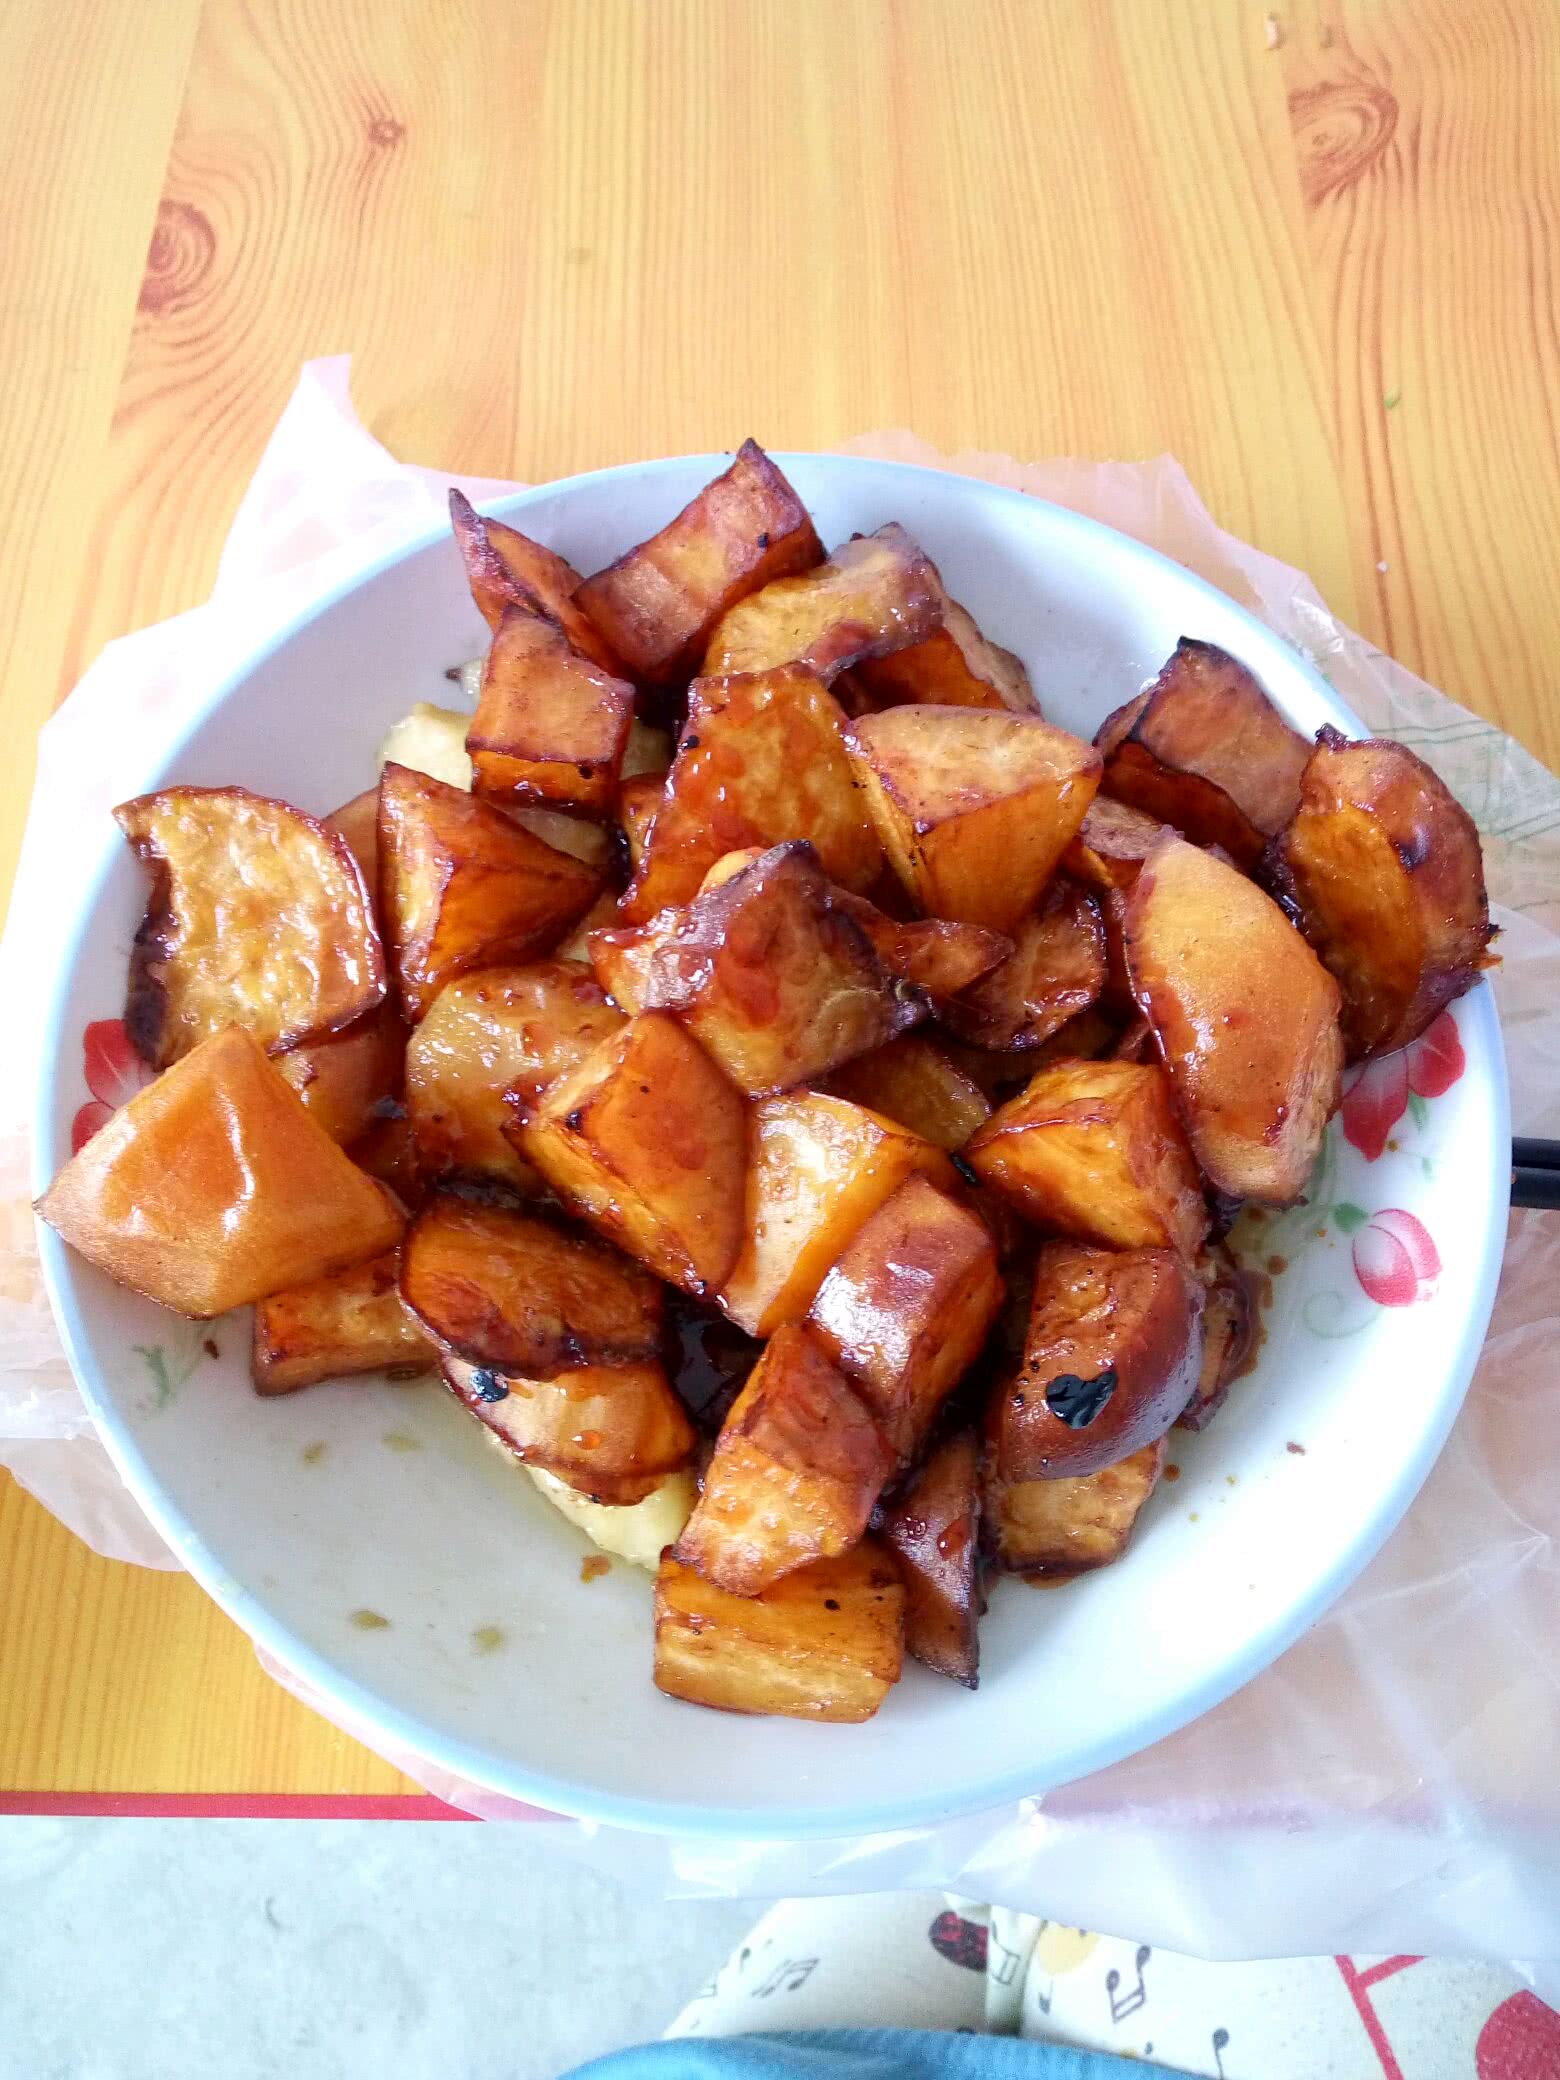 烤箱烤红薯怎么做_烤箱烤红薯的做法_刘大花_豆果美食